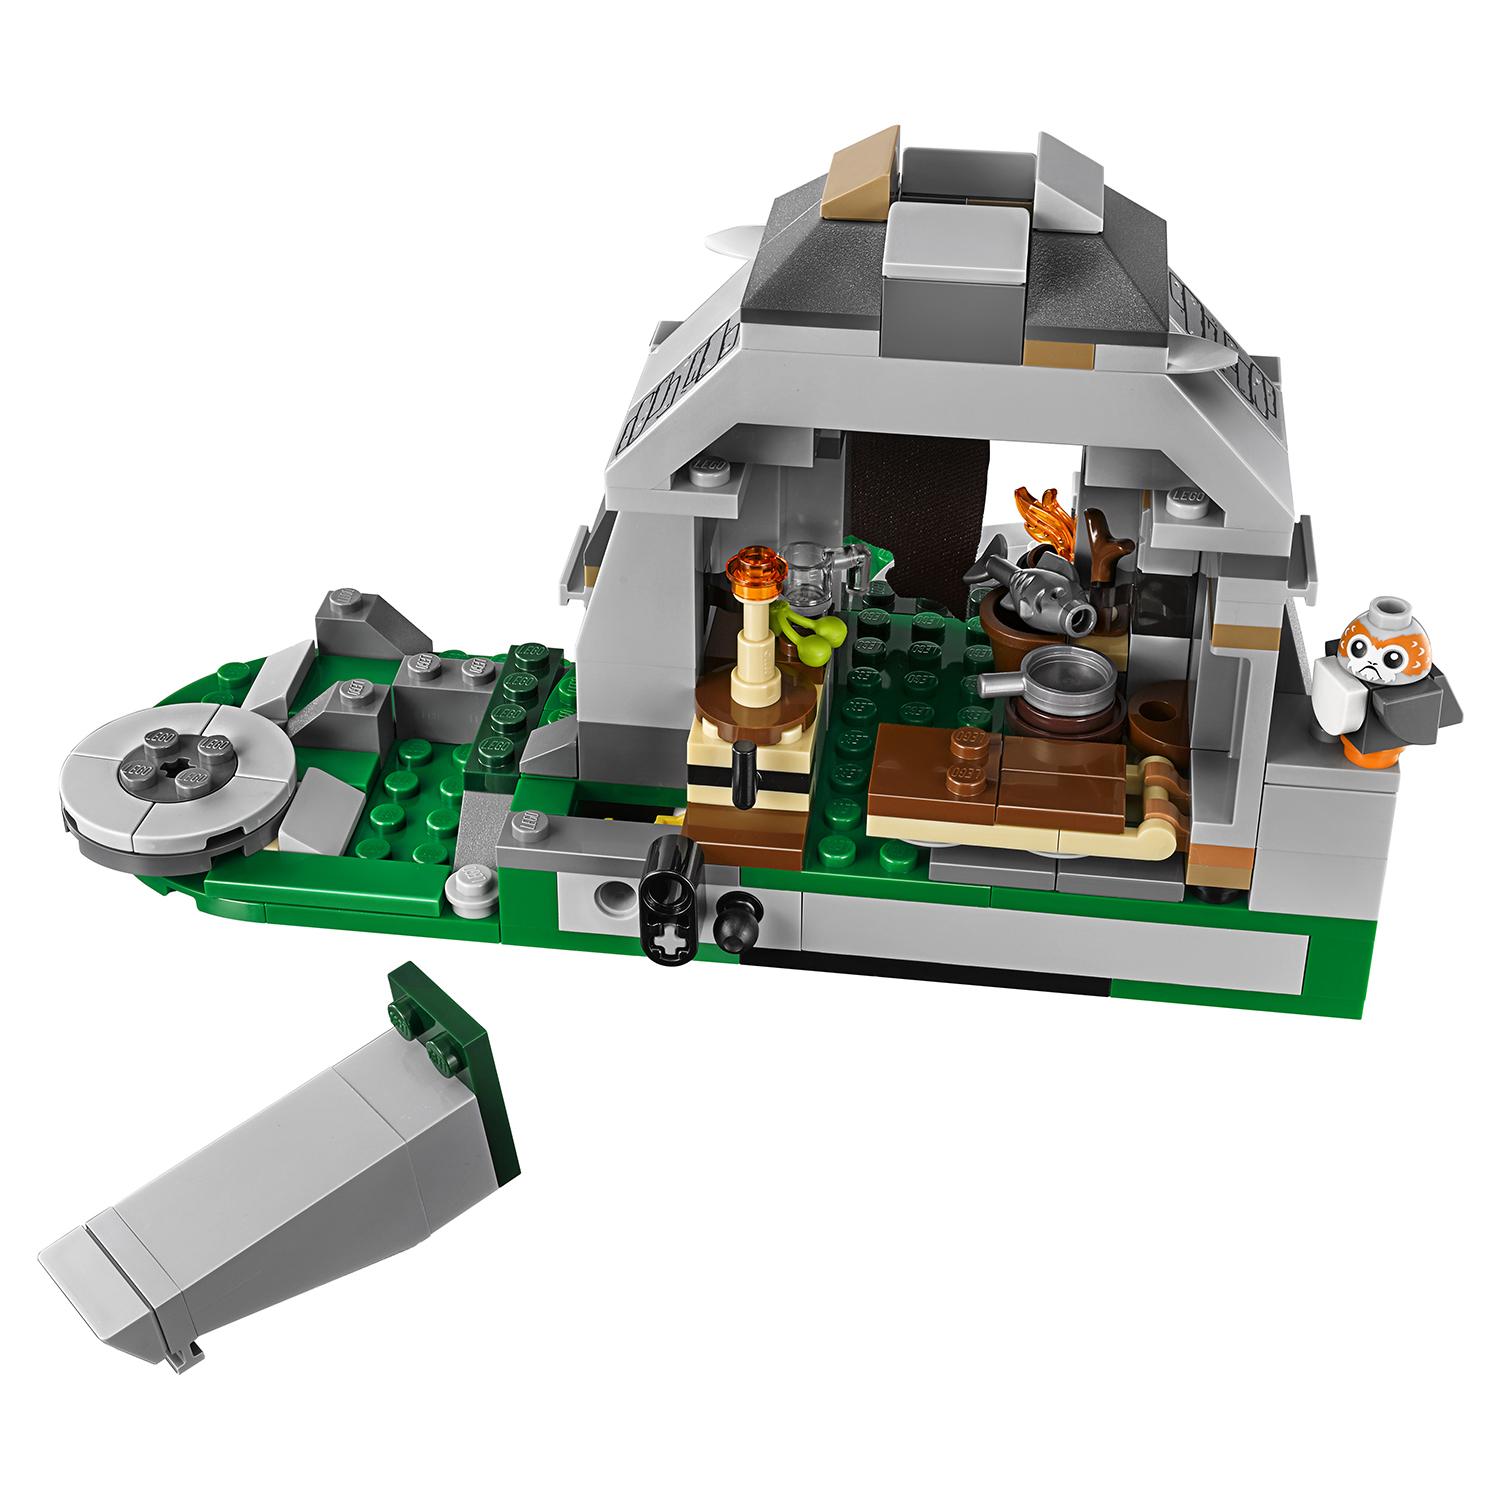 Lego Star Wars 75200 Тренировки на островах Эч-То